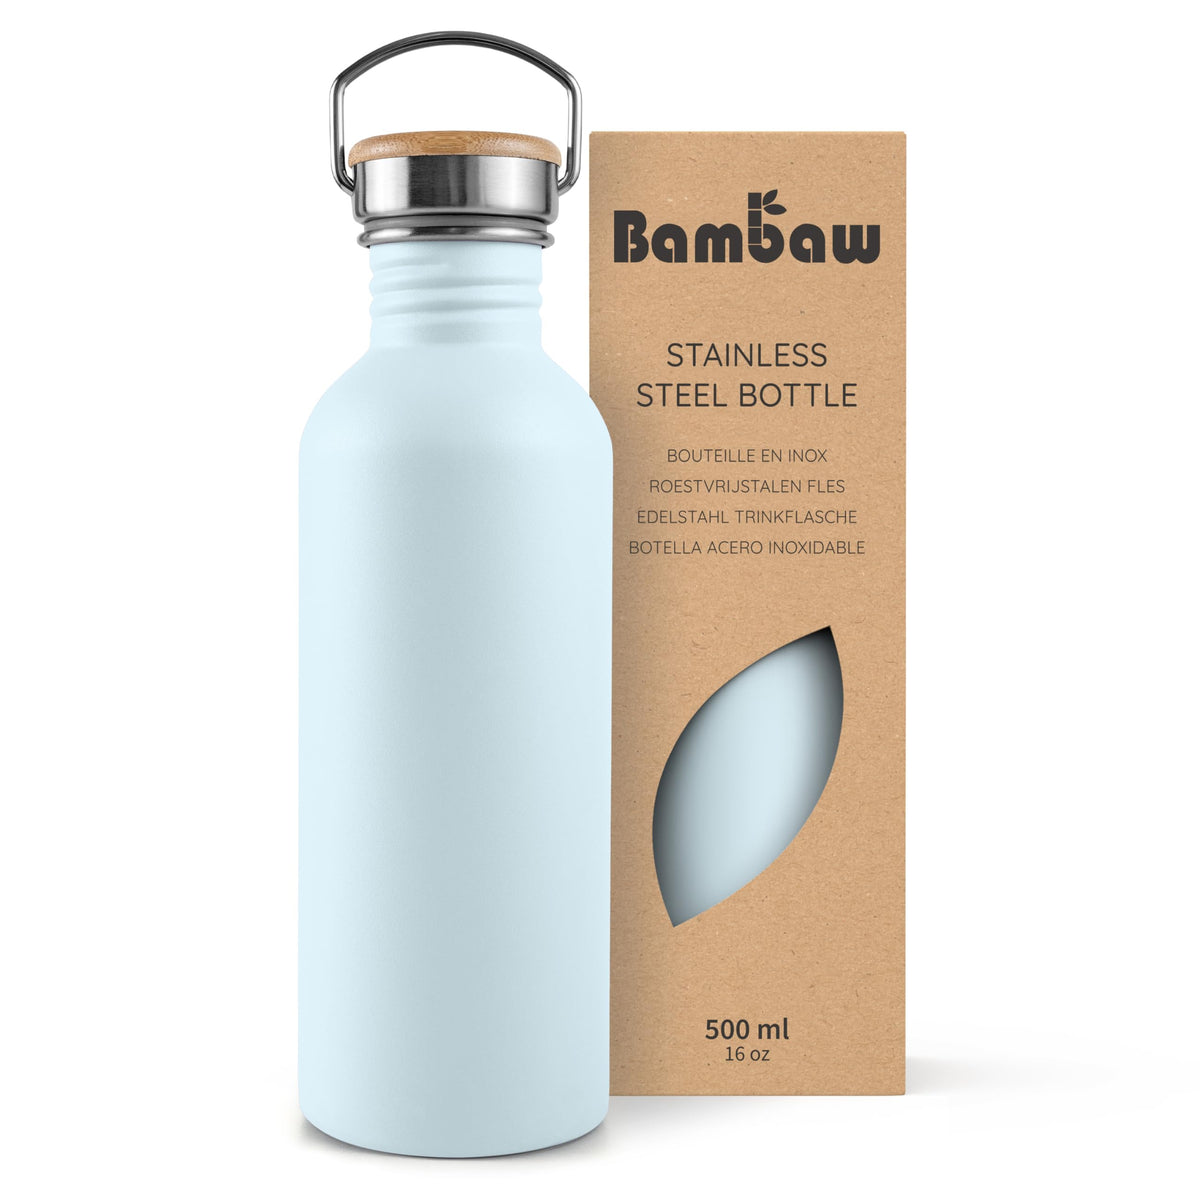 Bambaw Stainless Steel Water Bottle 500ml, Light Blue Water Bottle, Non-Insulated Water Bottle, Metal Flask, BPA Free Water Bottle, Leak Proof Water Bottles, Reusable Water Bottles – Ice Blue